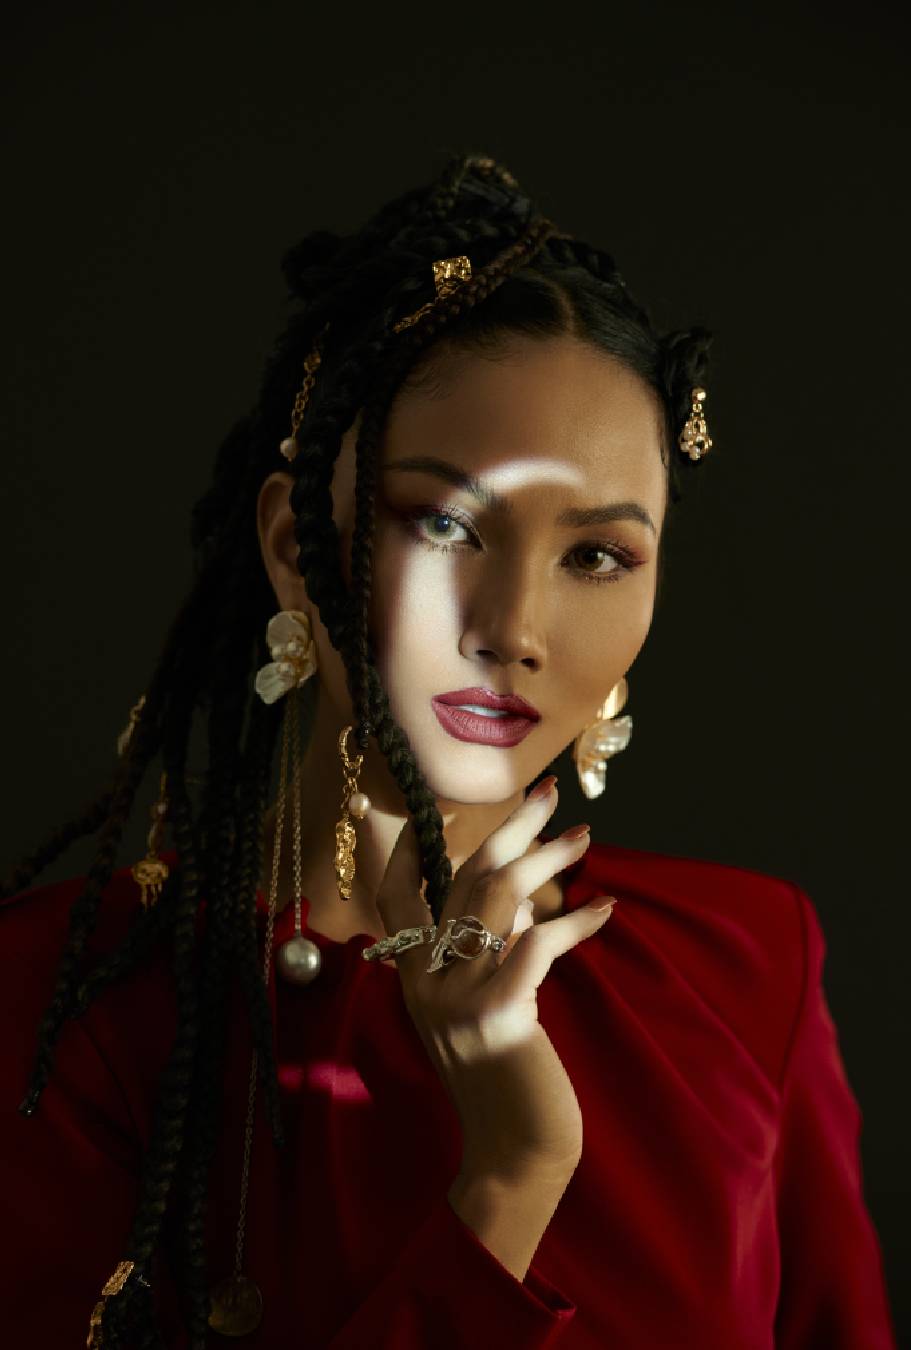 Bộ ảnh với trang phục đơn giản lấy 2 màu sắc đen - đỏ cơ bản làm chủ đạo, nhưng người đẹp đã sử dụng nhiều phụ kiện nổi bật cùng kiểu tóc độc đáo để tạo điểm nhấn.